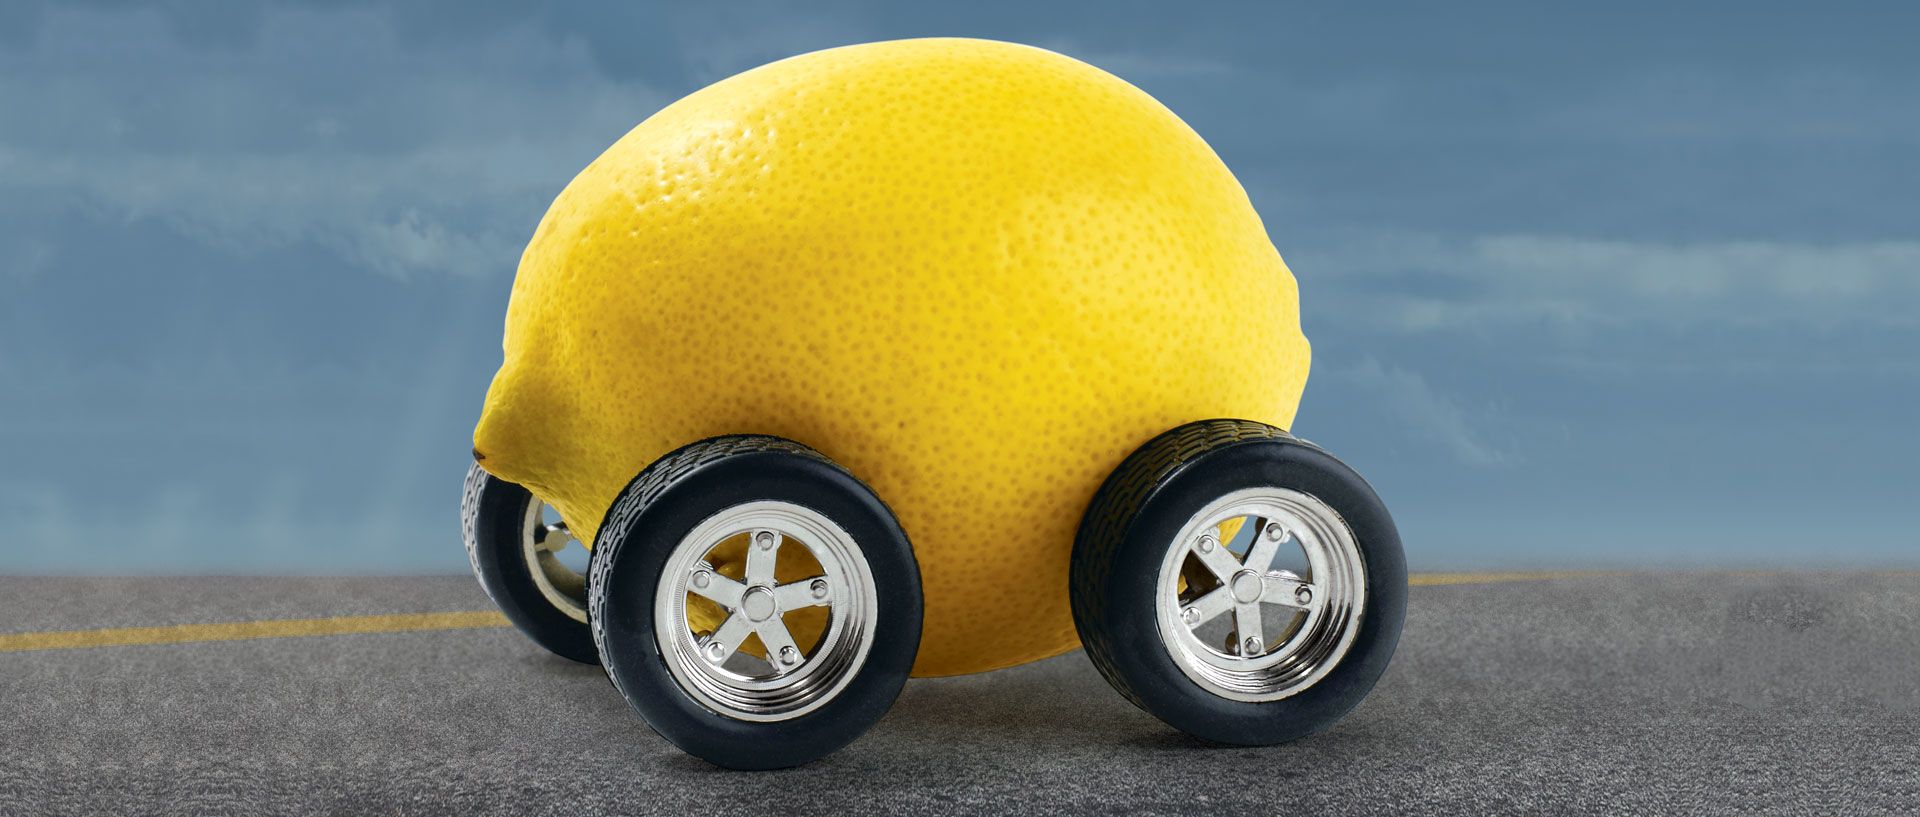 Lemon car image